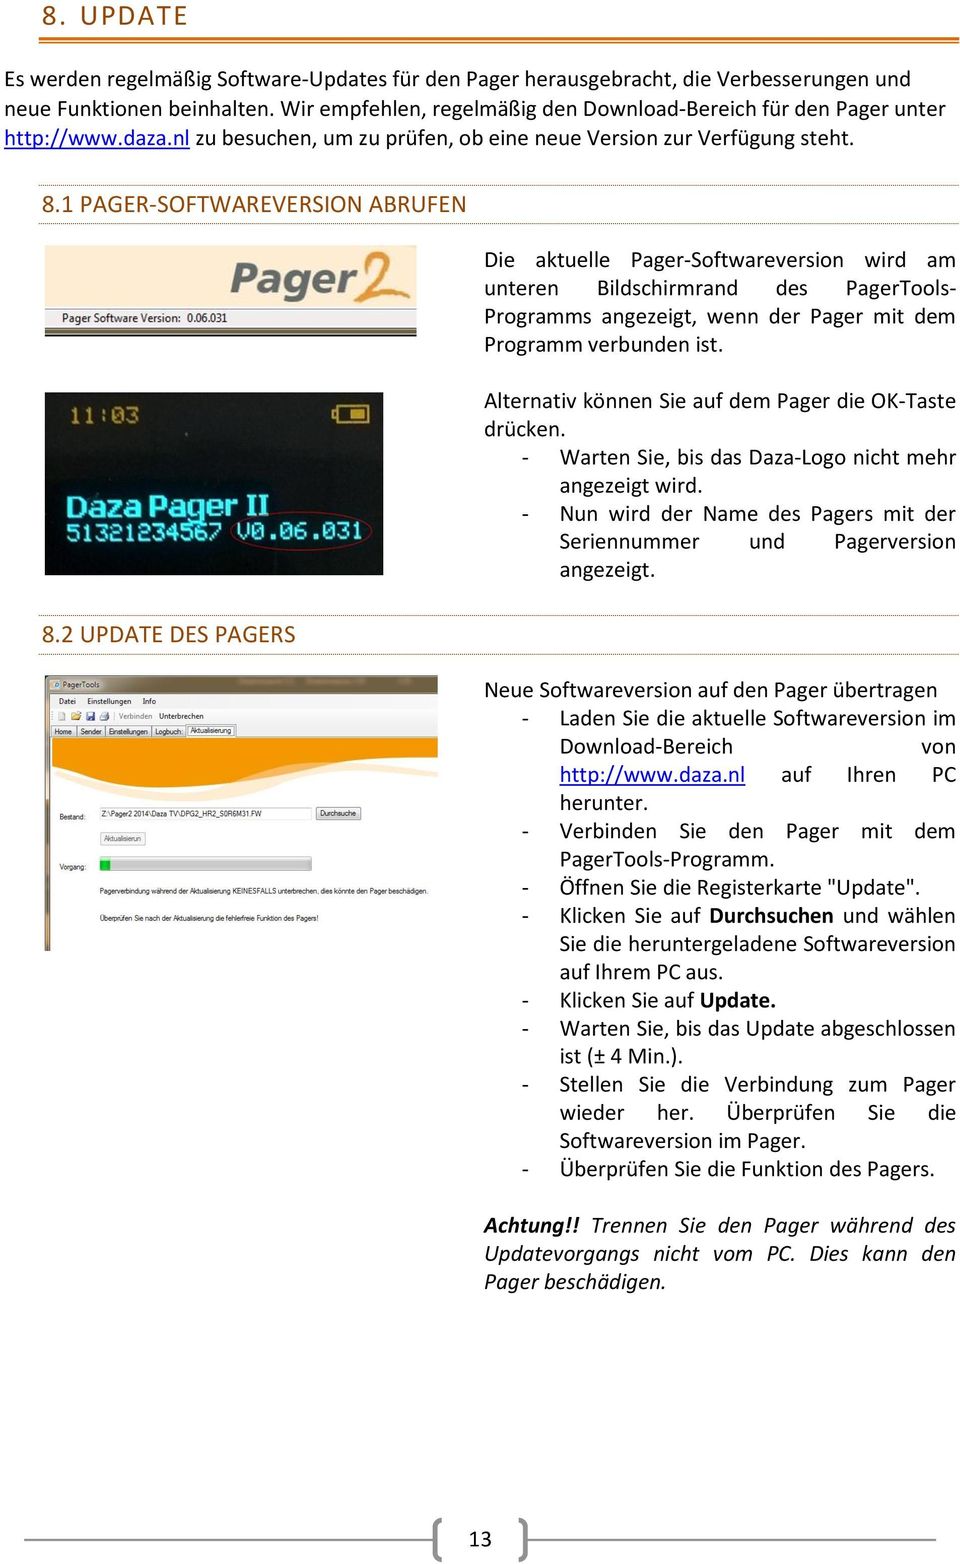 2 UPDATE DES PAGERS Die aktuelle Pager-Softwareversion wird am unteren Bildschirmrand des PagerTools- Programms angezeigt, wenn der Pager mit dem Programm verbunden ist.